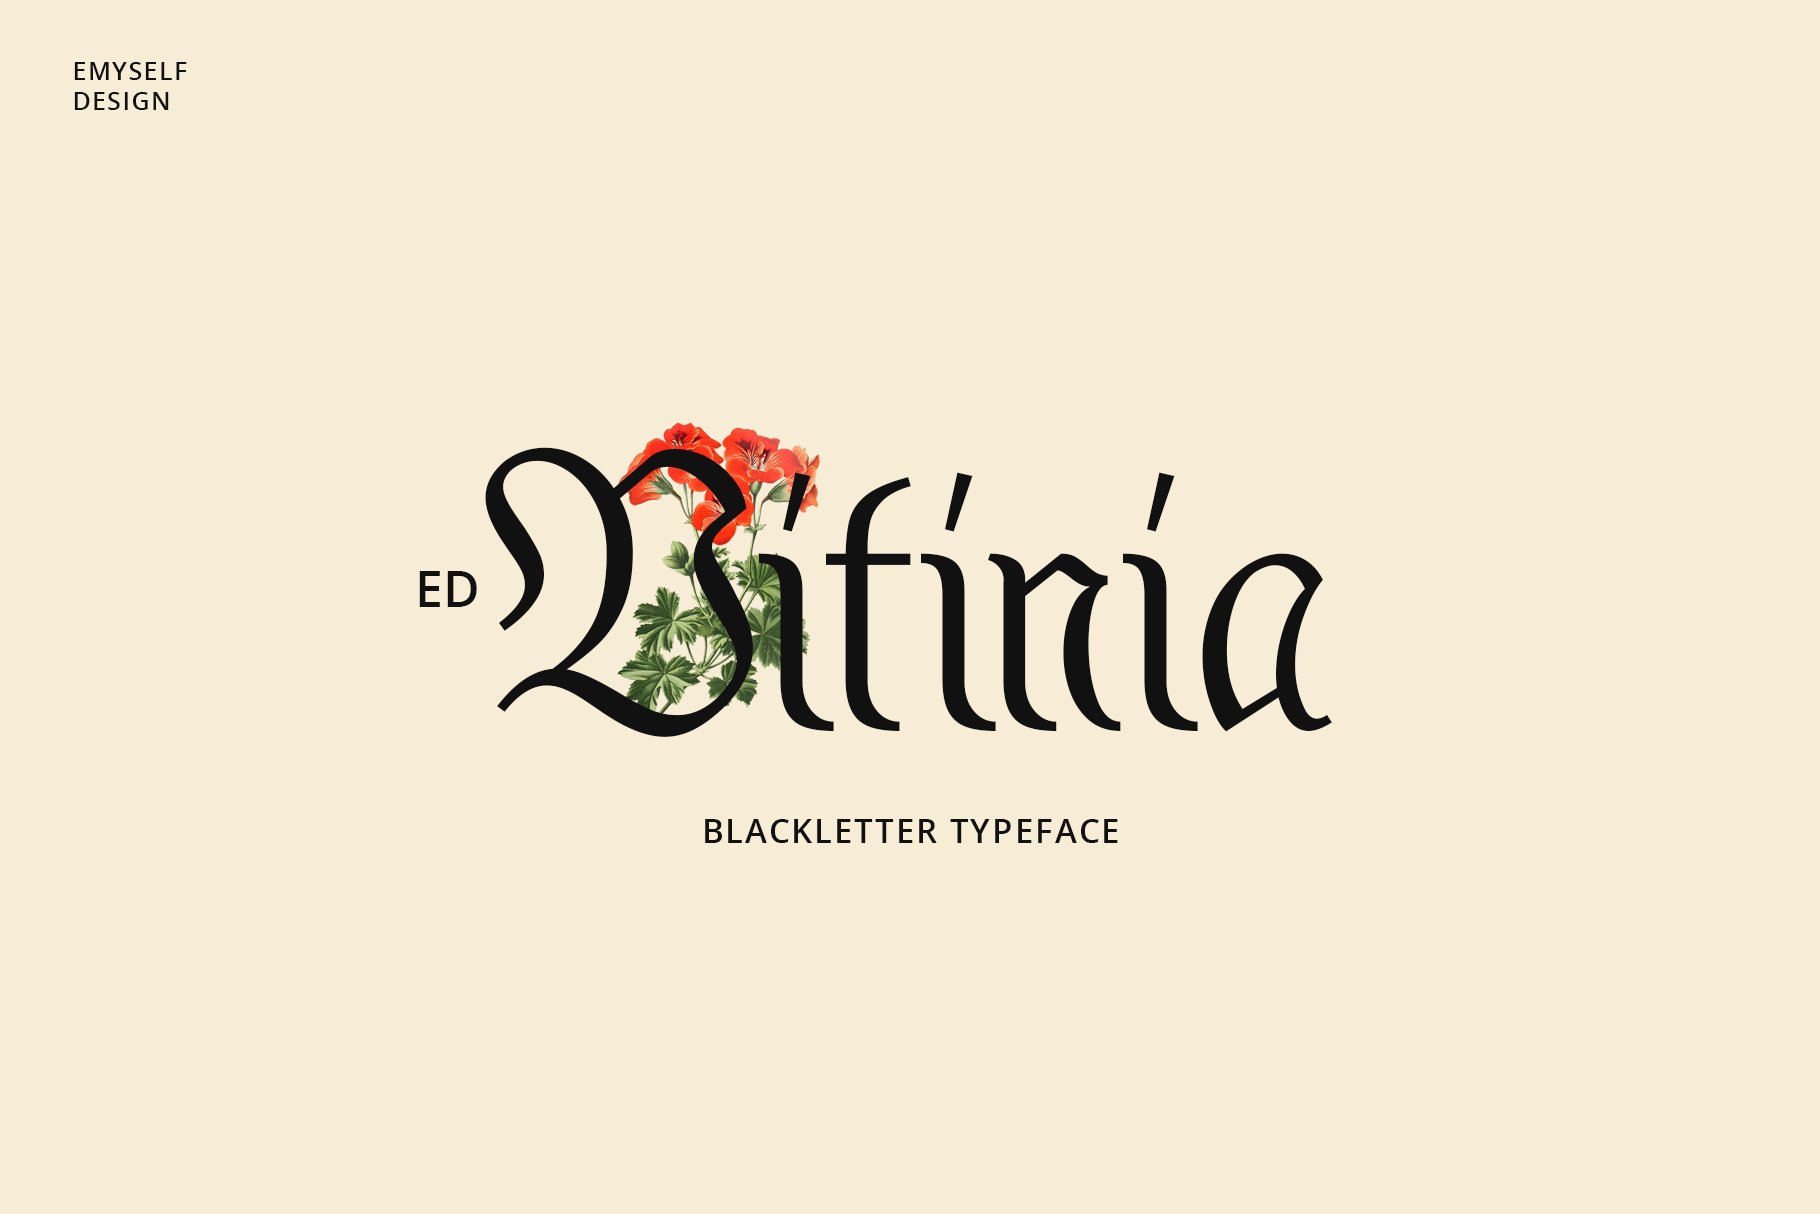 ED Vitinia cover image.